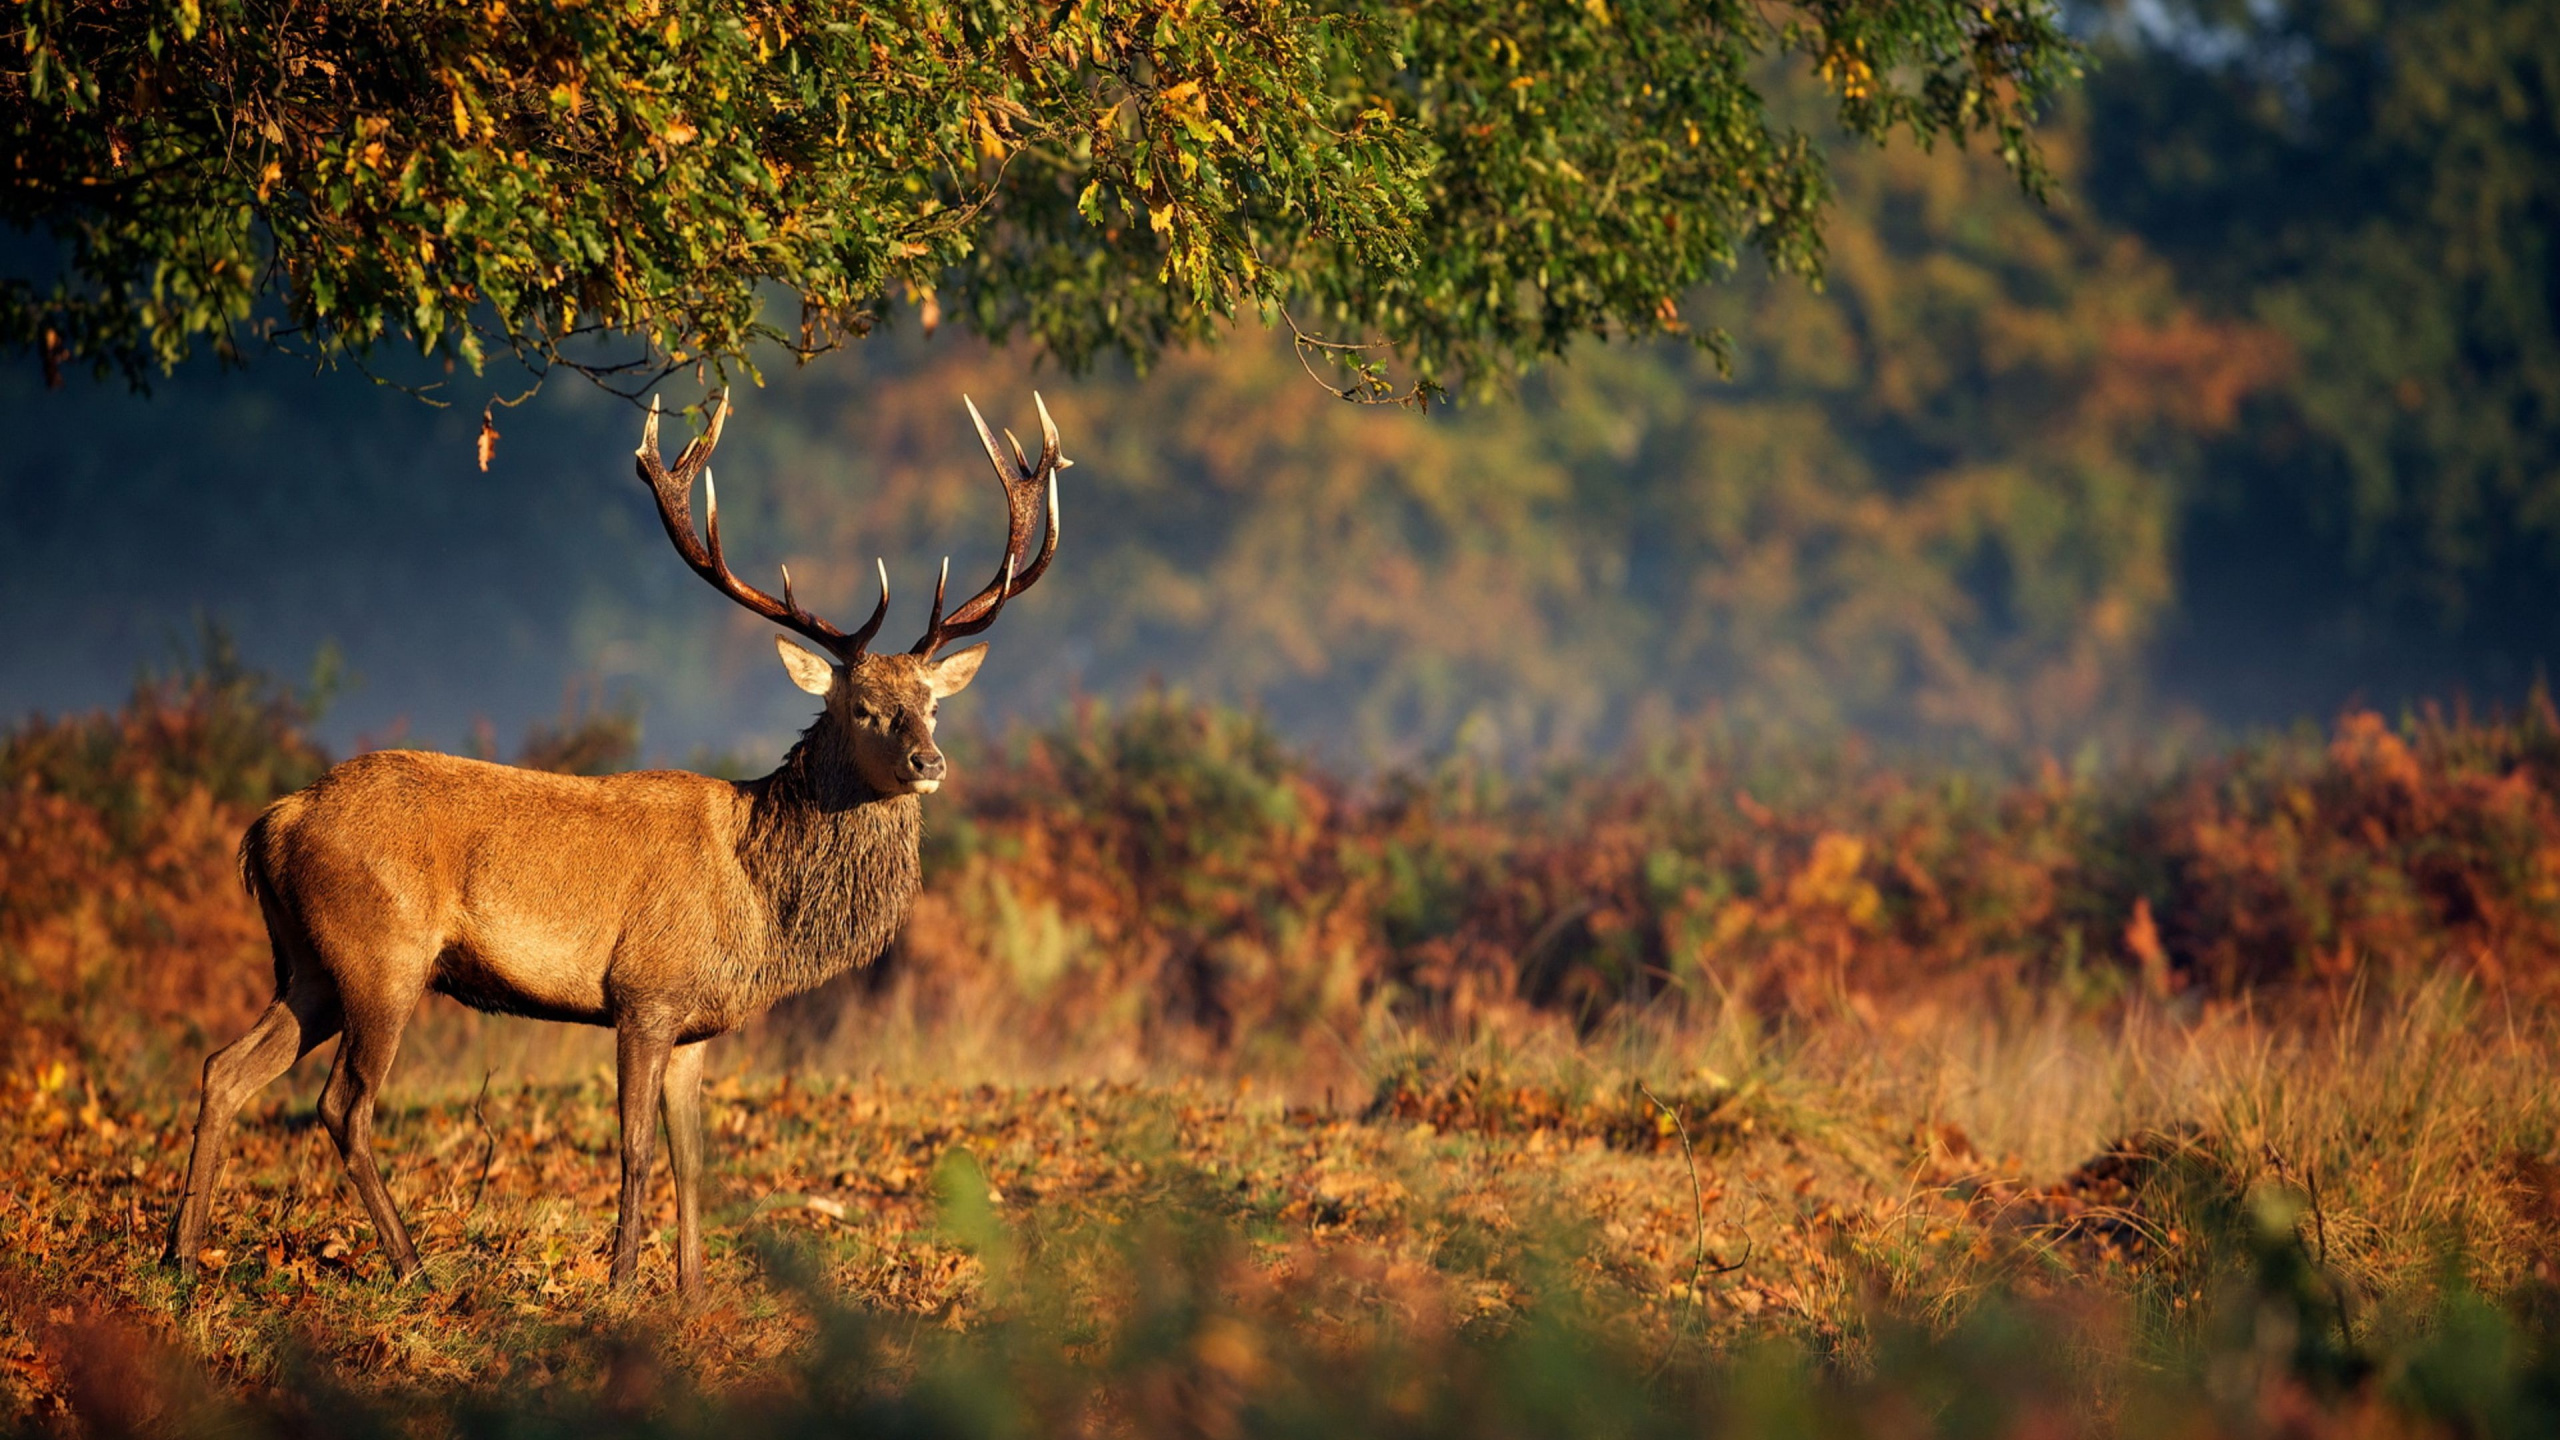 红鹿, 野生动物, 鹿角, 喇叭, 生态系统 壁纸 2560x1440 允许